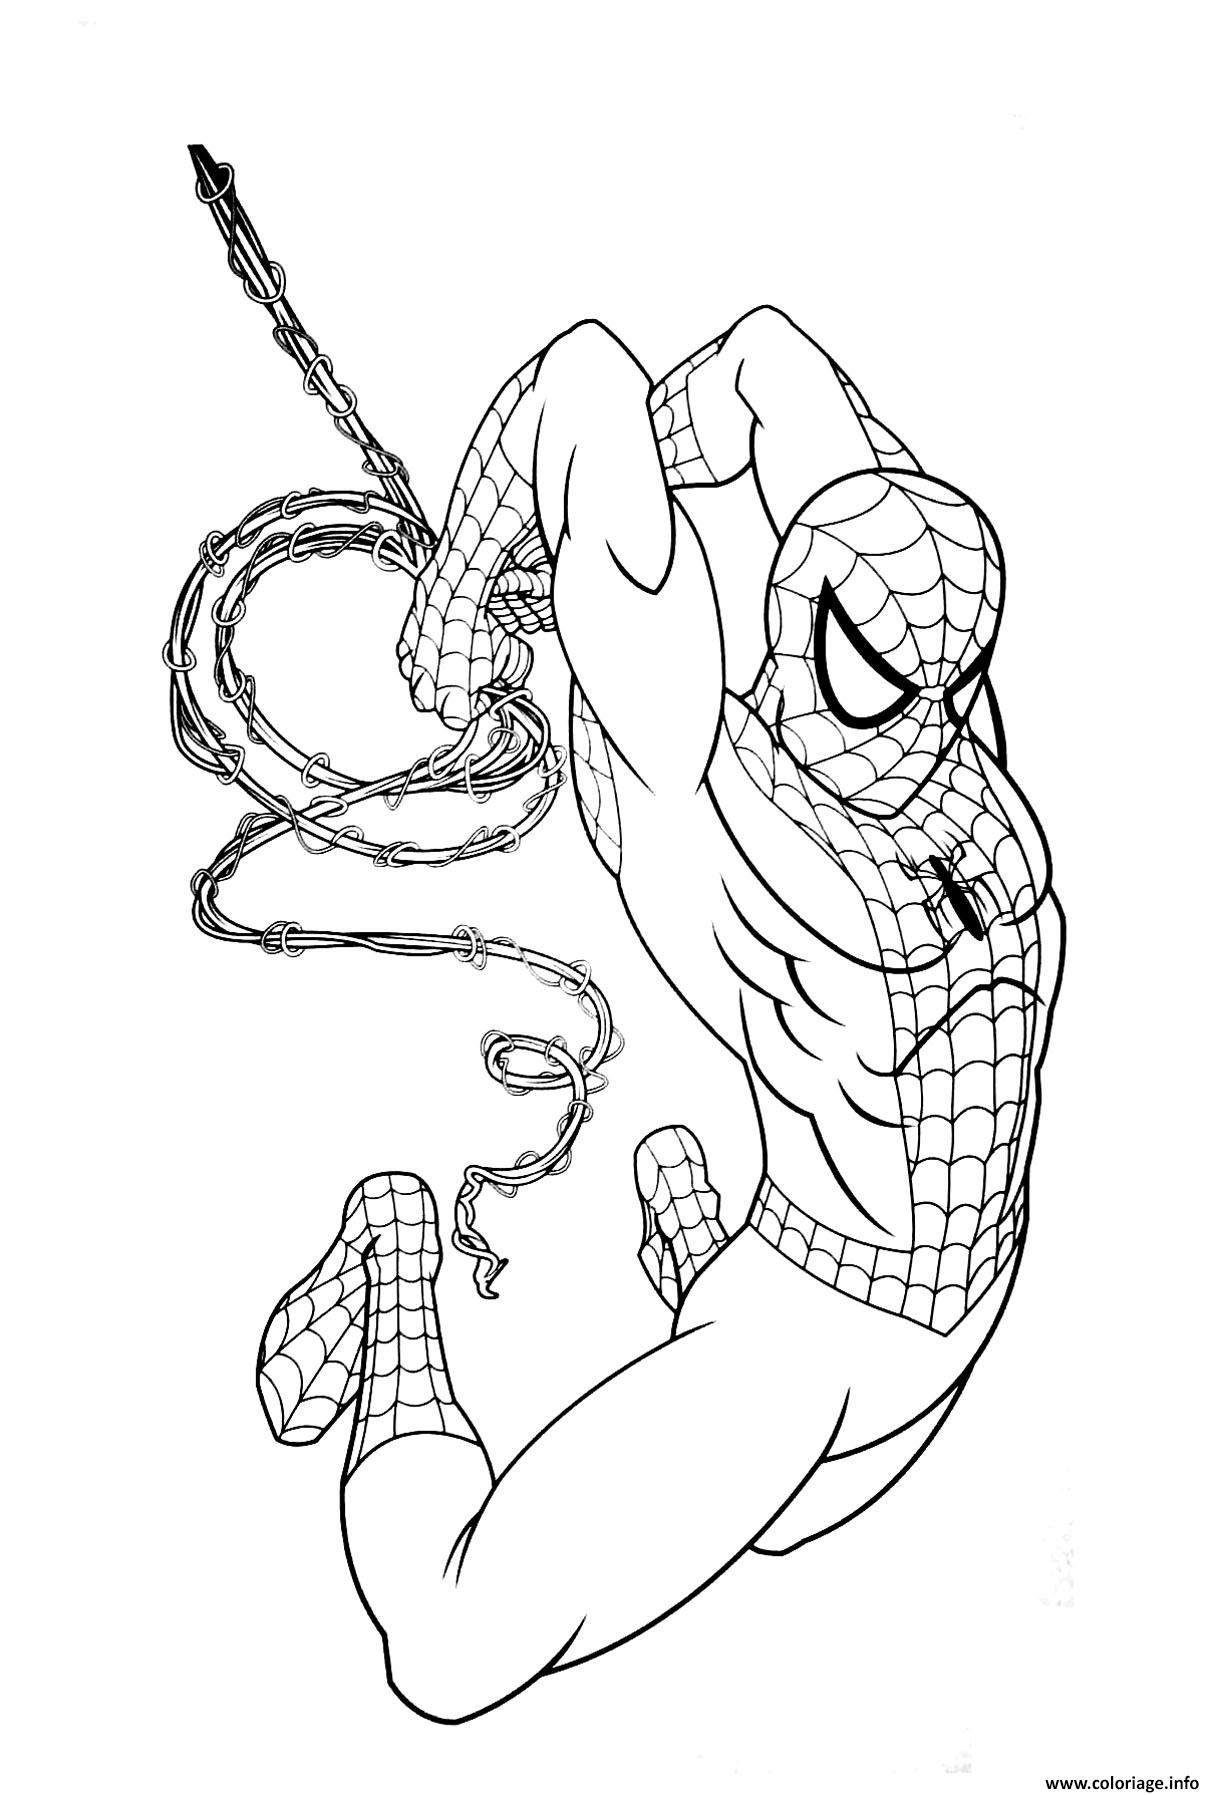 Coloriage Garcon Super Heros Marvel Spiderman Dessin Super Heros à imprimer